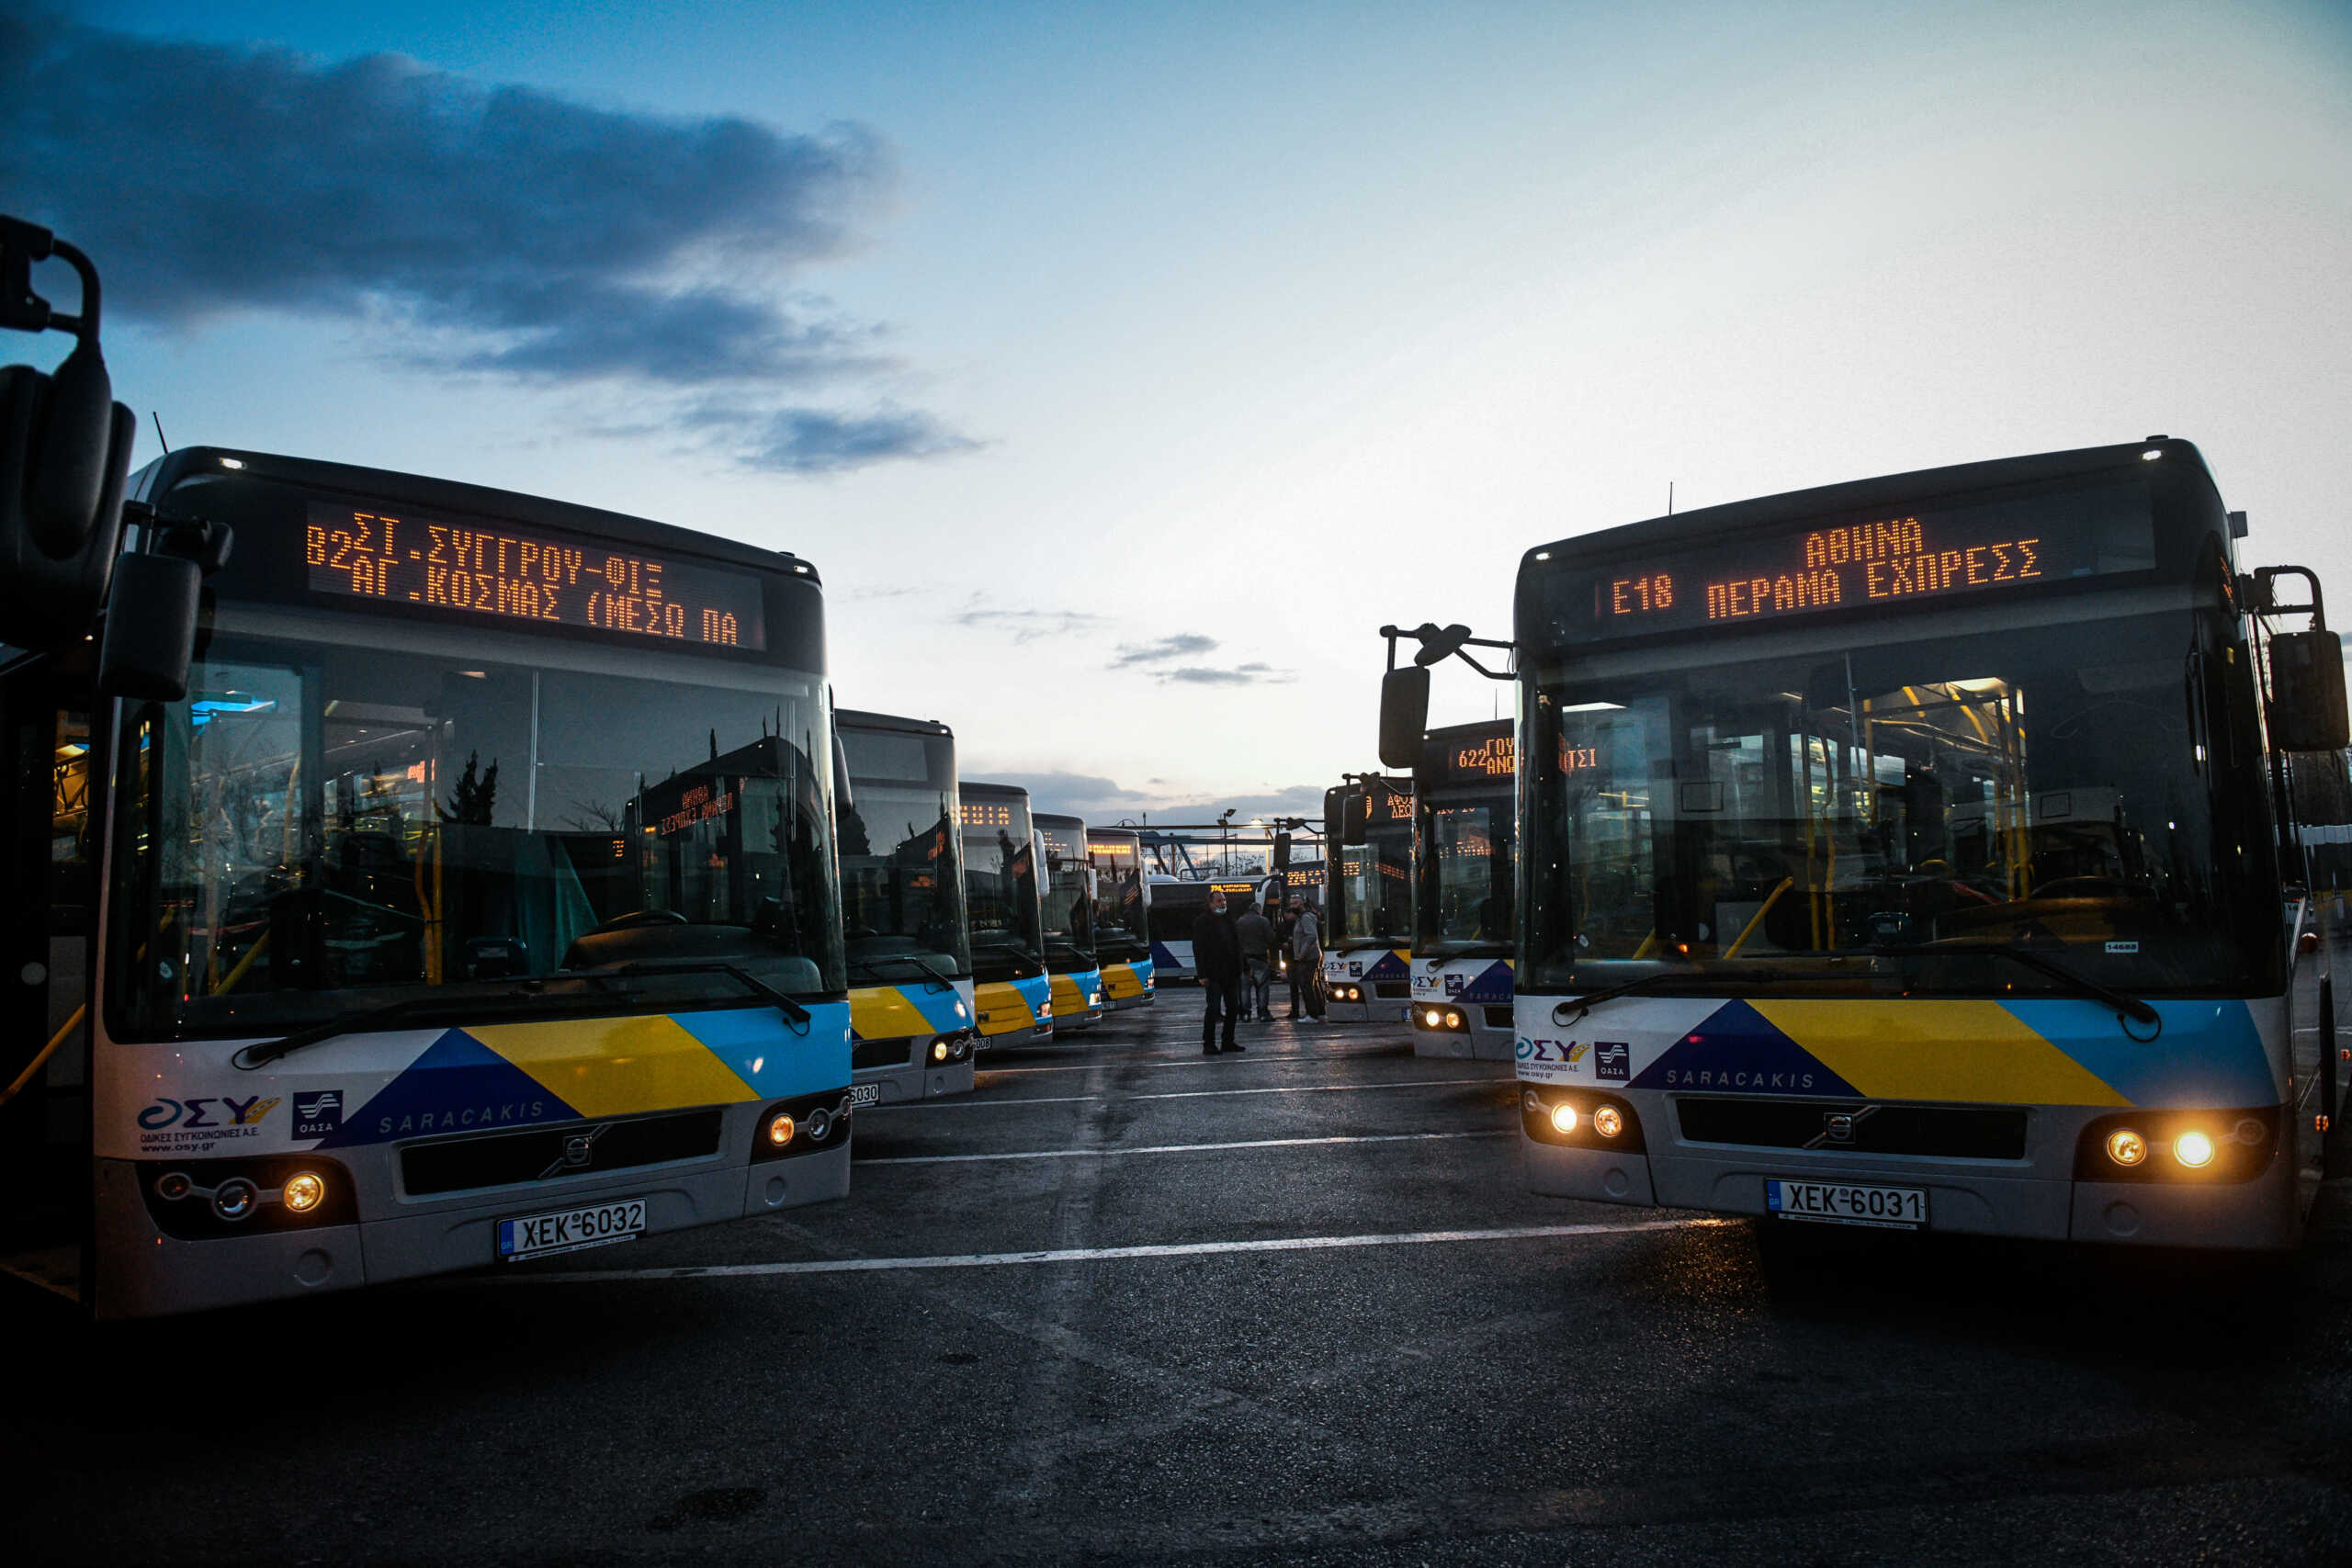 Αστικές Συγκοινωνίες: Έρχονται 300 «φρέσκα» και σύγχρονα λεωφορεία στην Αθήνα με 10ετές leasing από το 2025